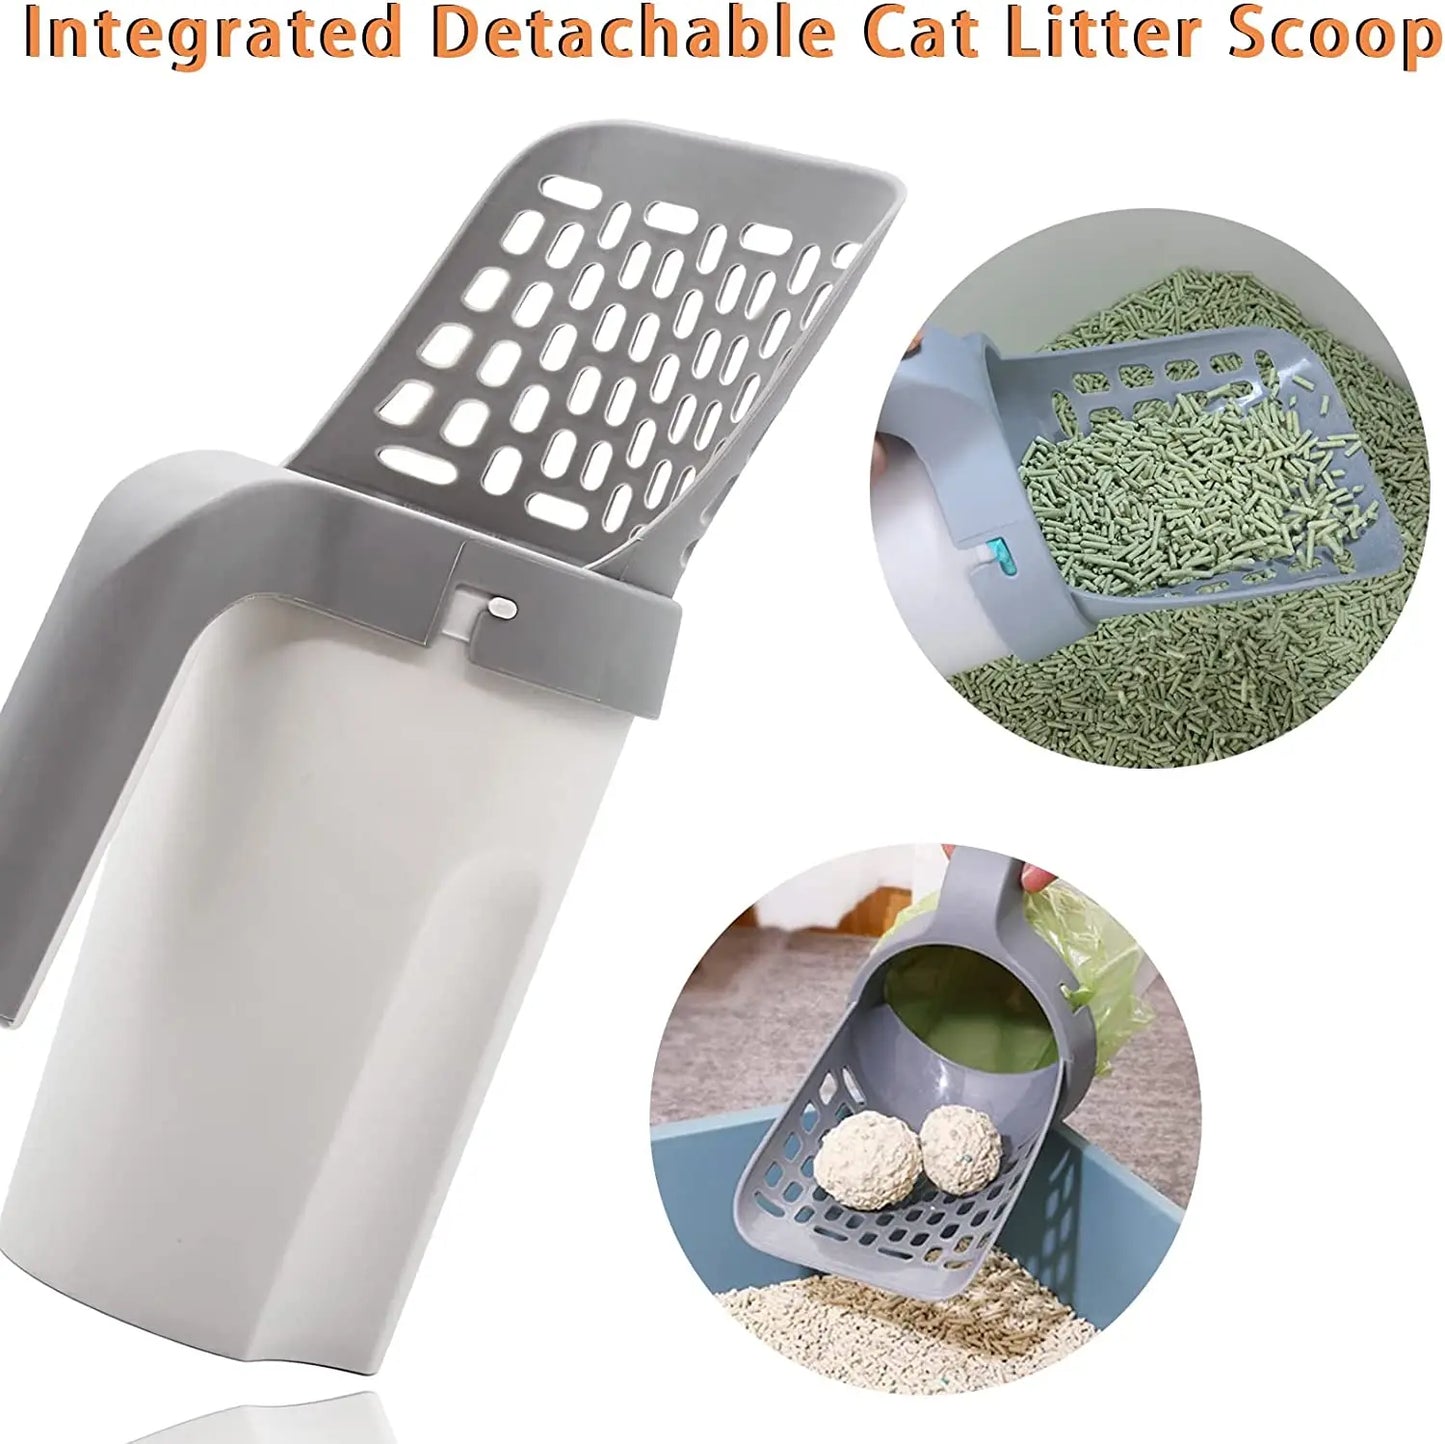 Cat Litter Shovel Scoop